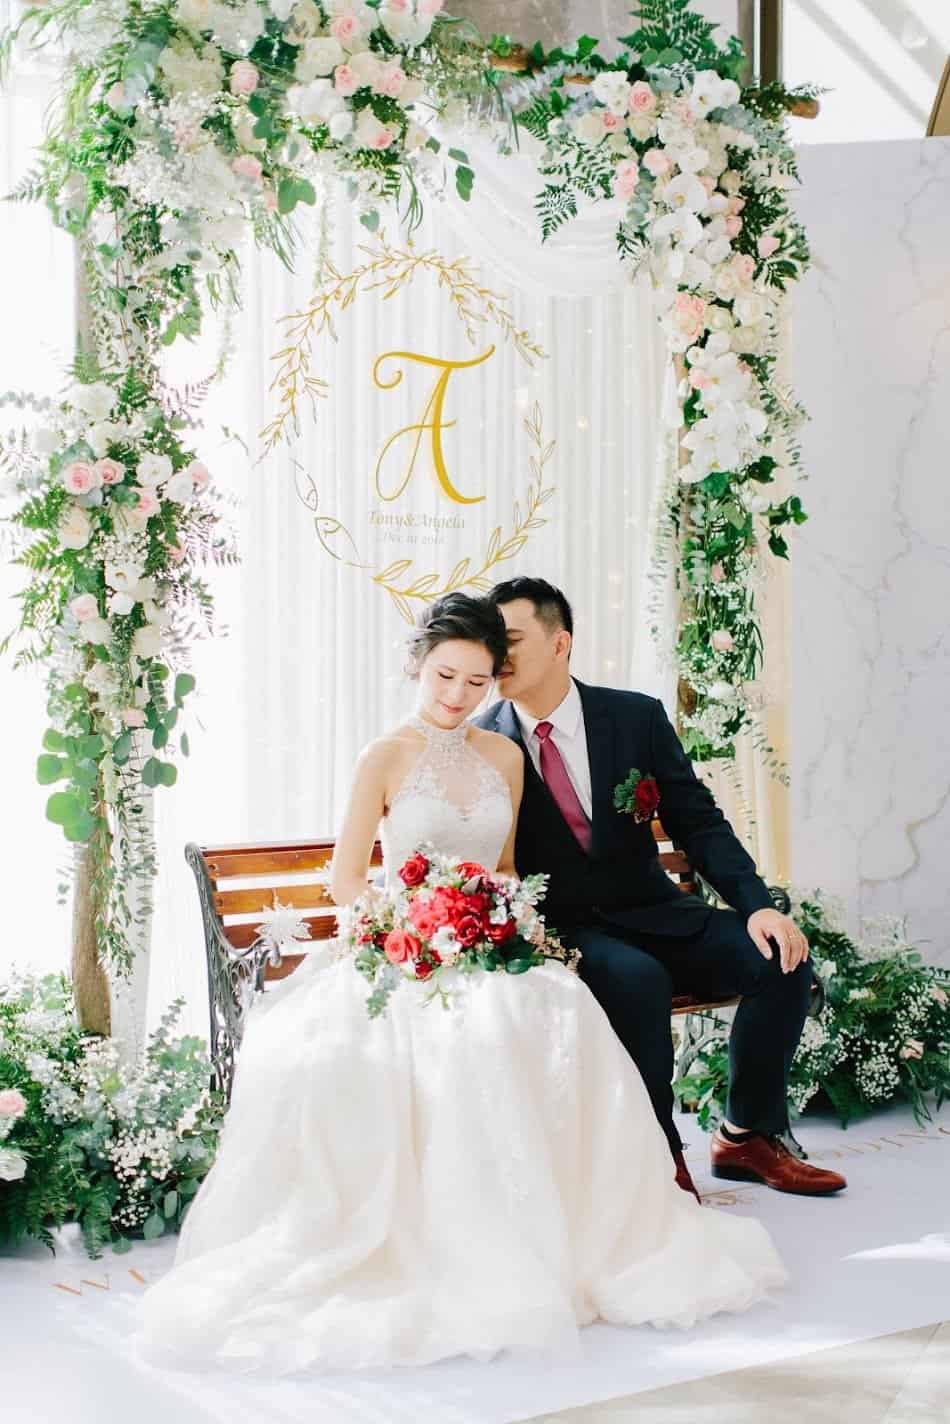 在 台北 的 萬豪酒店婚禮 場地舉行陽光正好的美式 婚禮 , 是每位新娘夢寐以求的西式婚禮樣式!